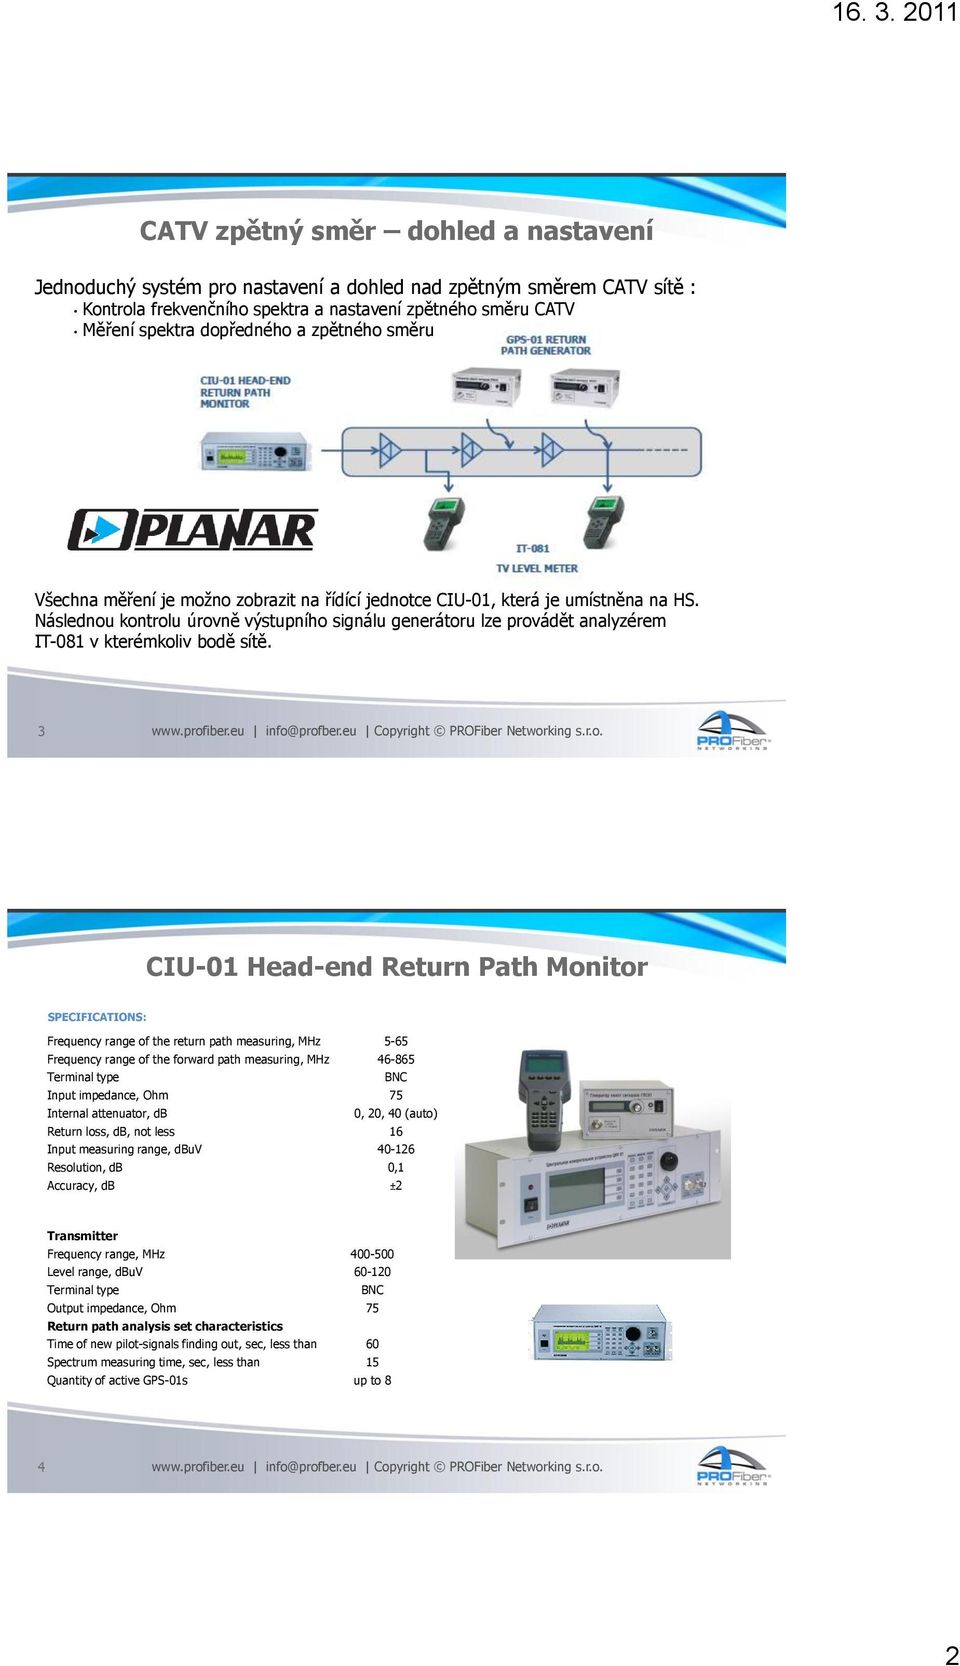 Následnou kontrolu úrovně výstupního signálu generátoru lze provádět analyzérem IT-081 v kterémkoliv bodě sítě.